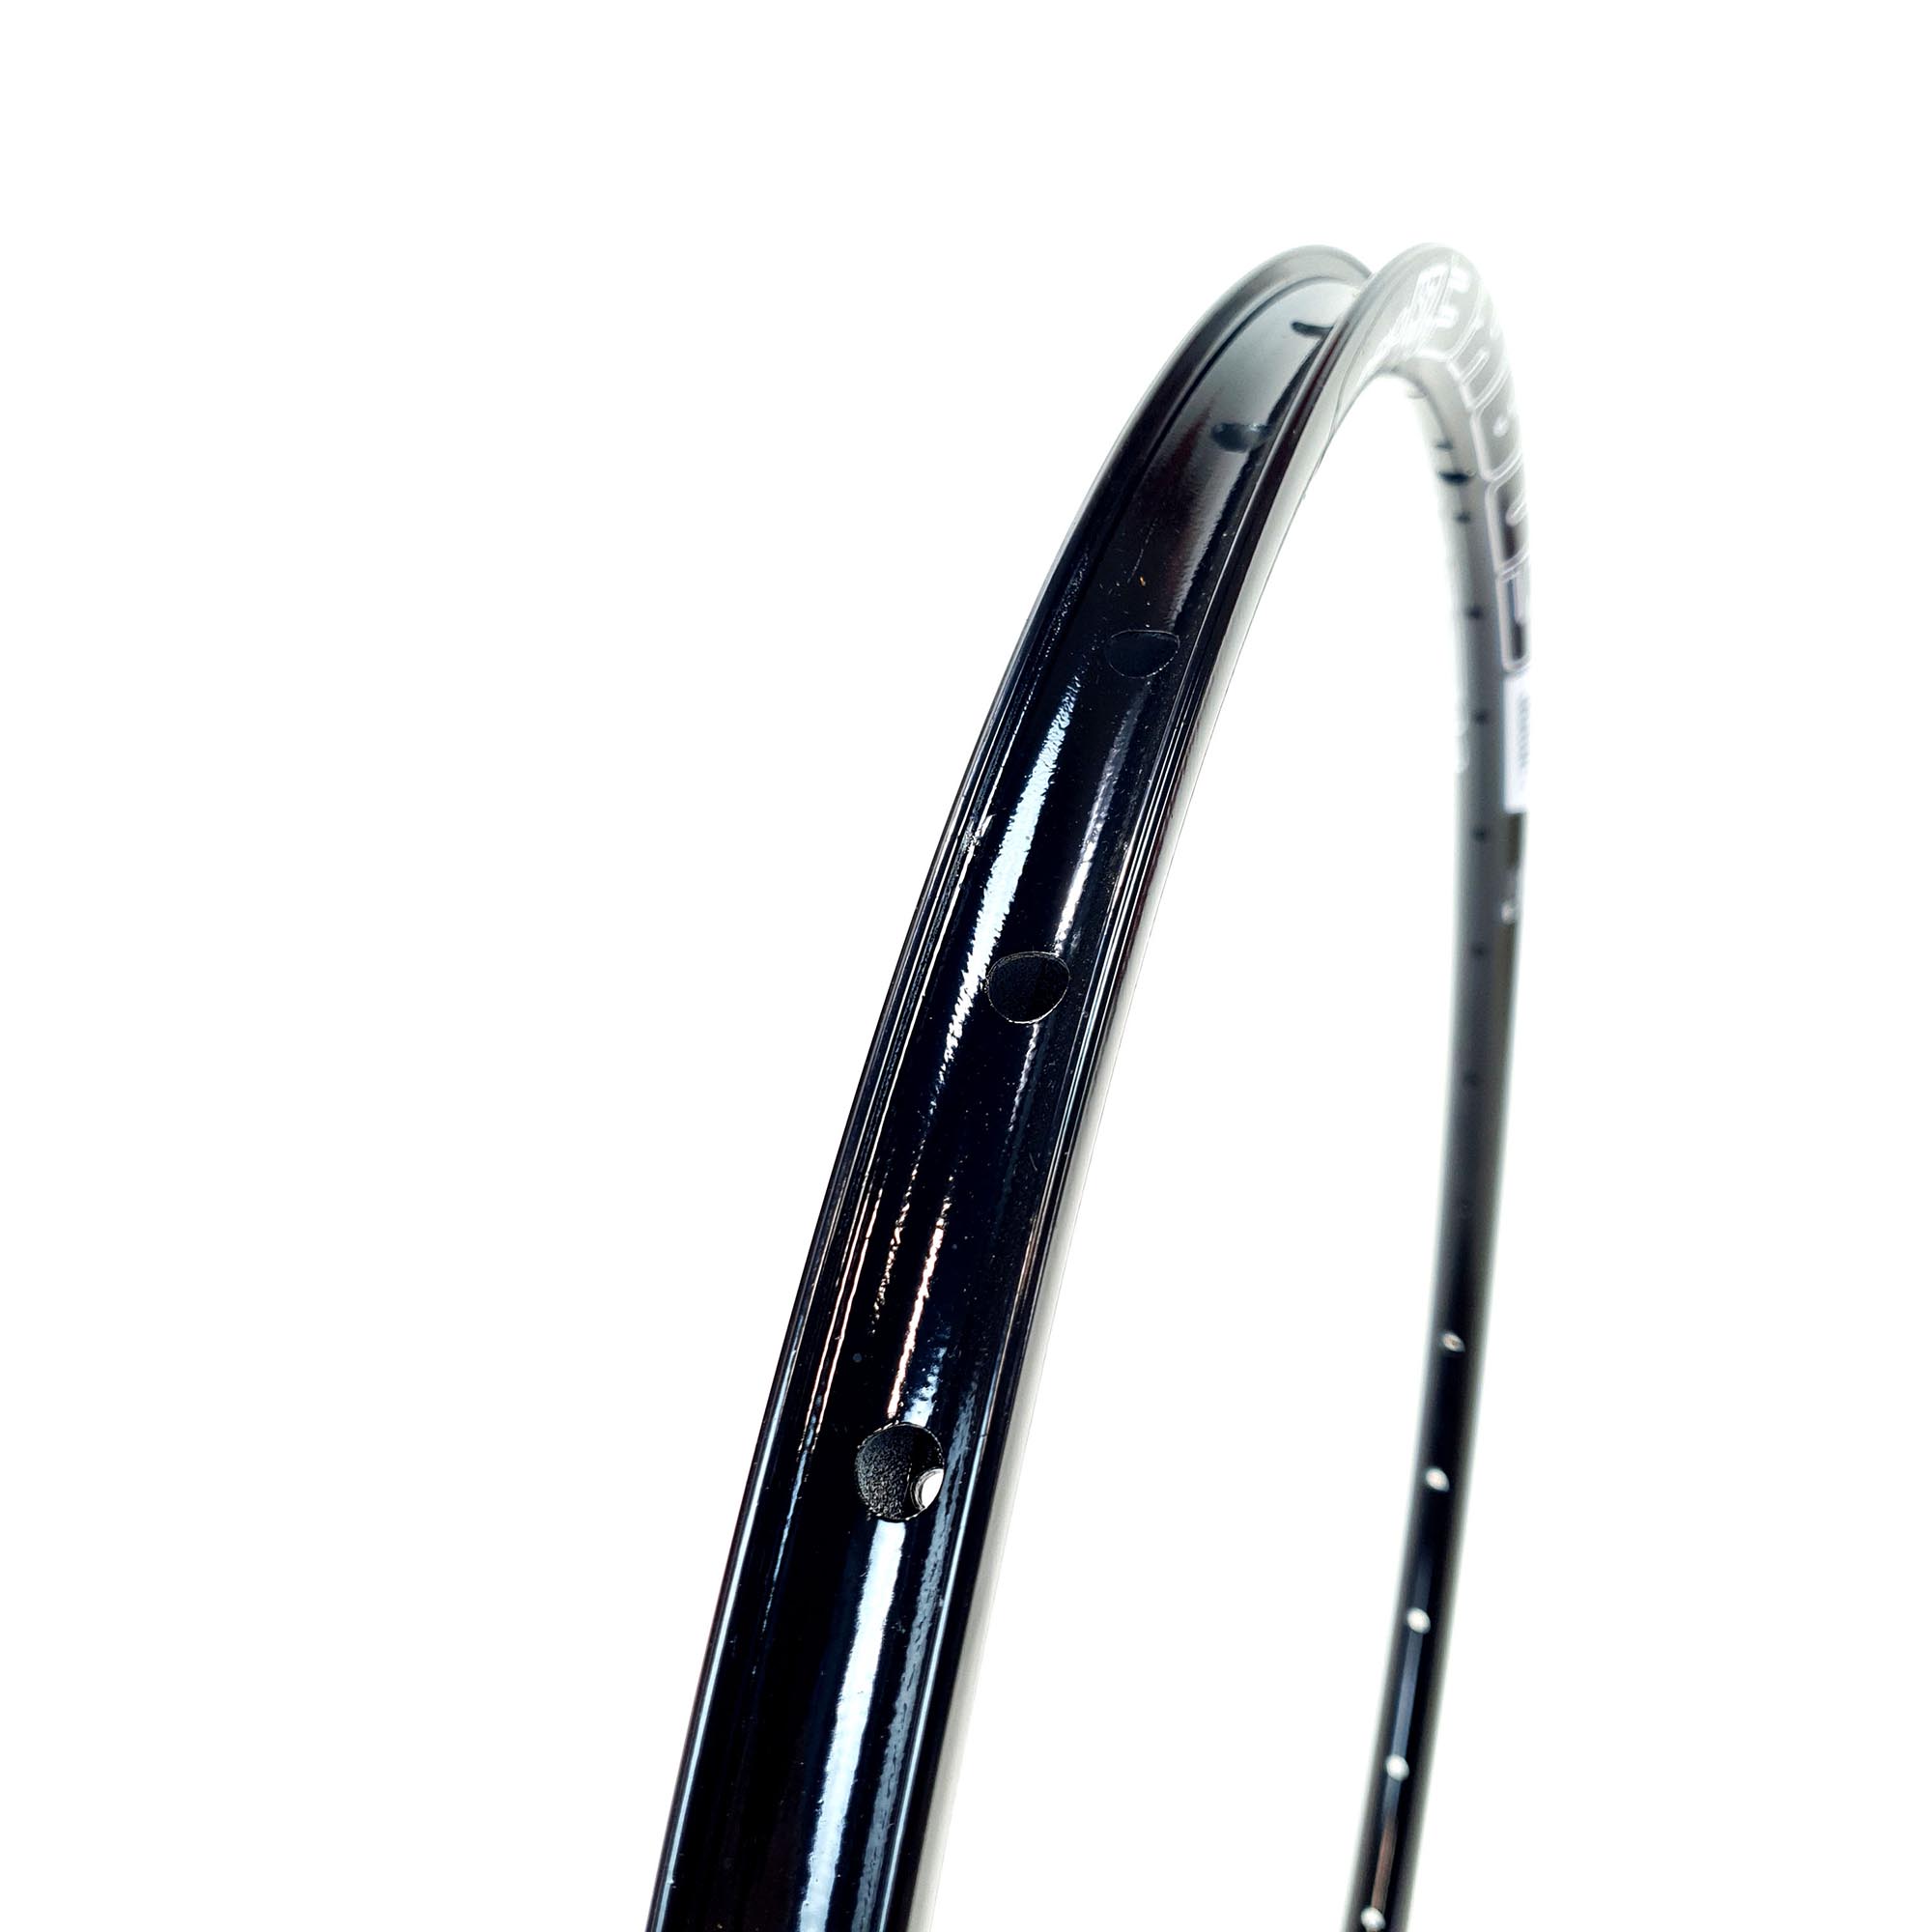 Aro de Bicicleta 29 Viper Aluminio Snake 36f Disc Ades